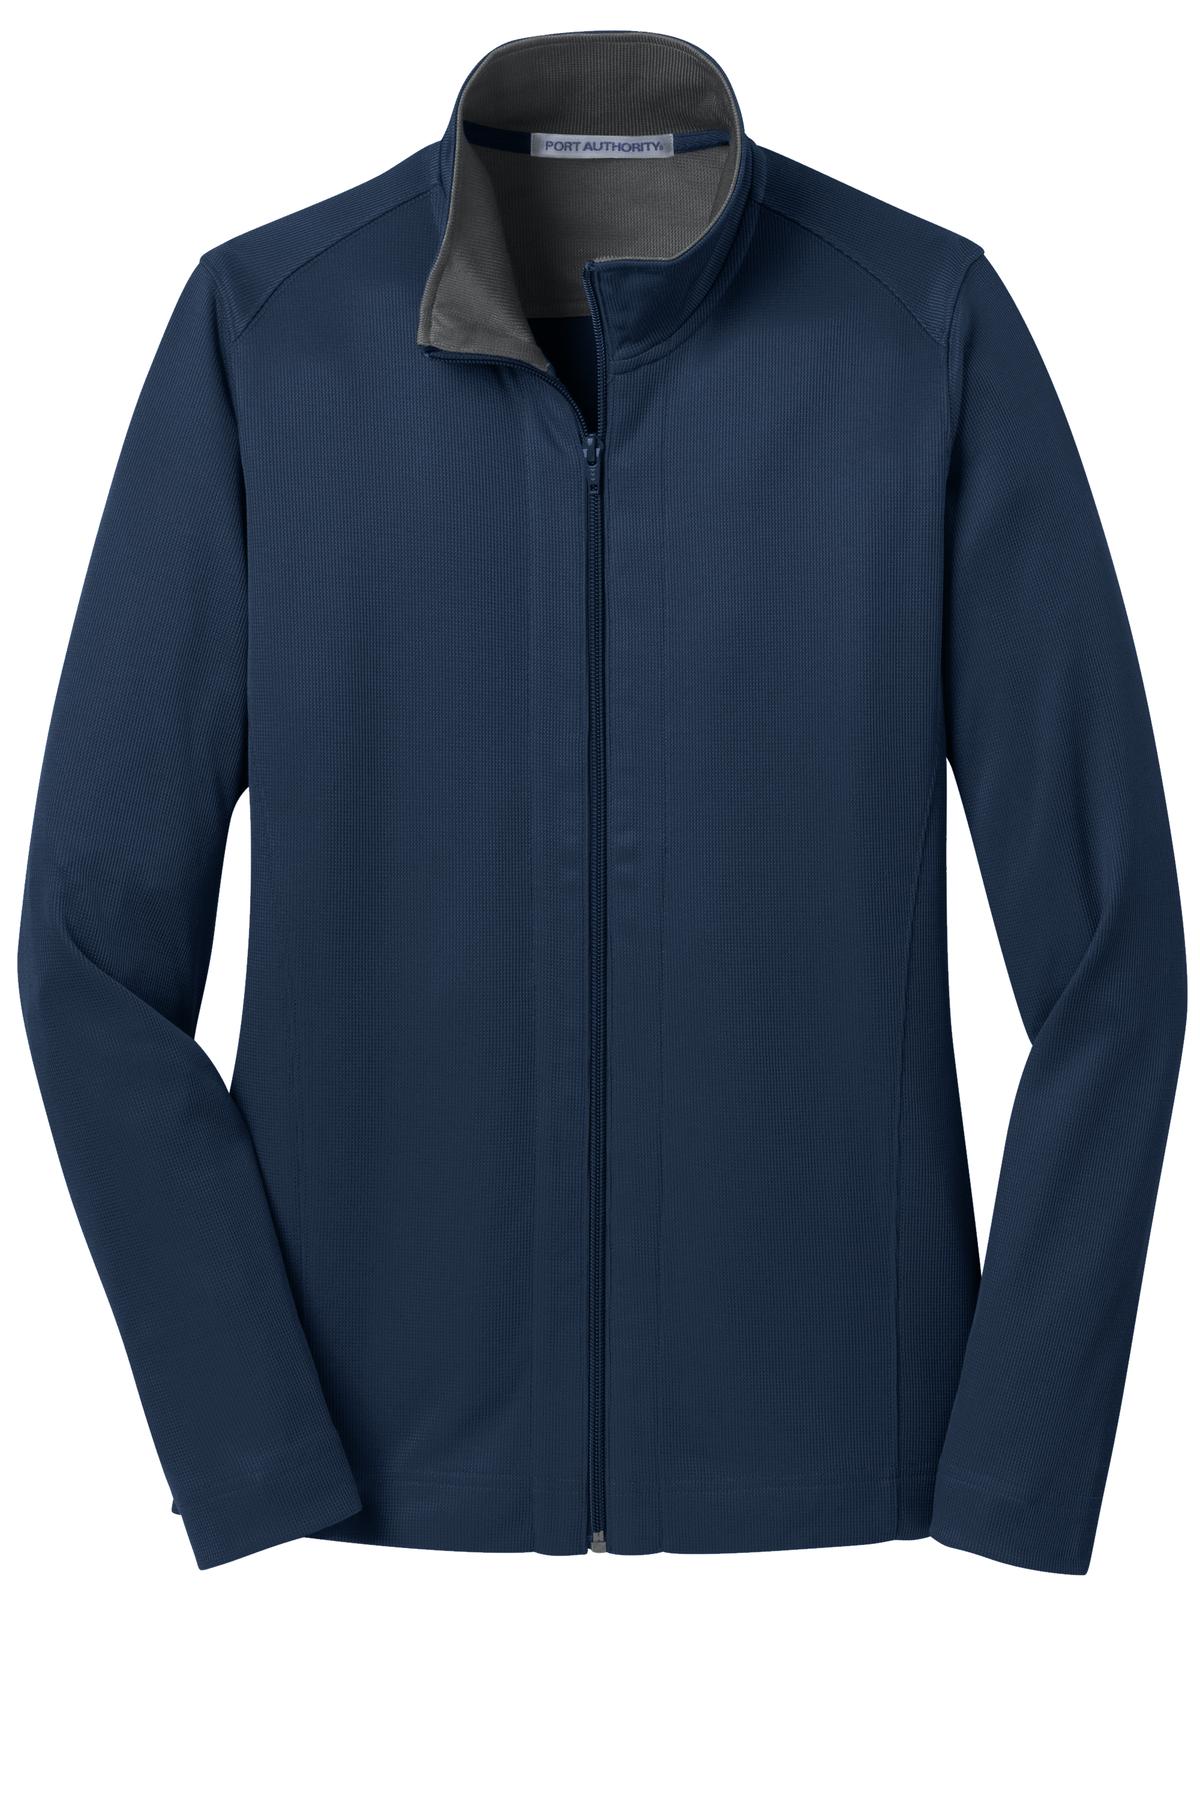 Port Authority Ladies Vertical Texture Full-Zip Jacket. L805